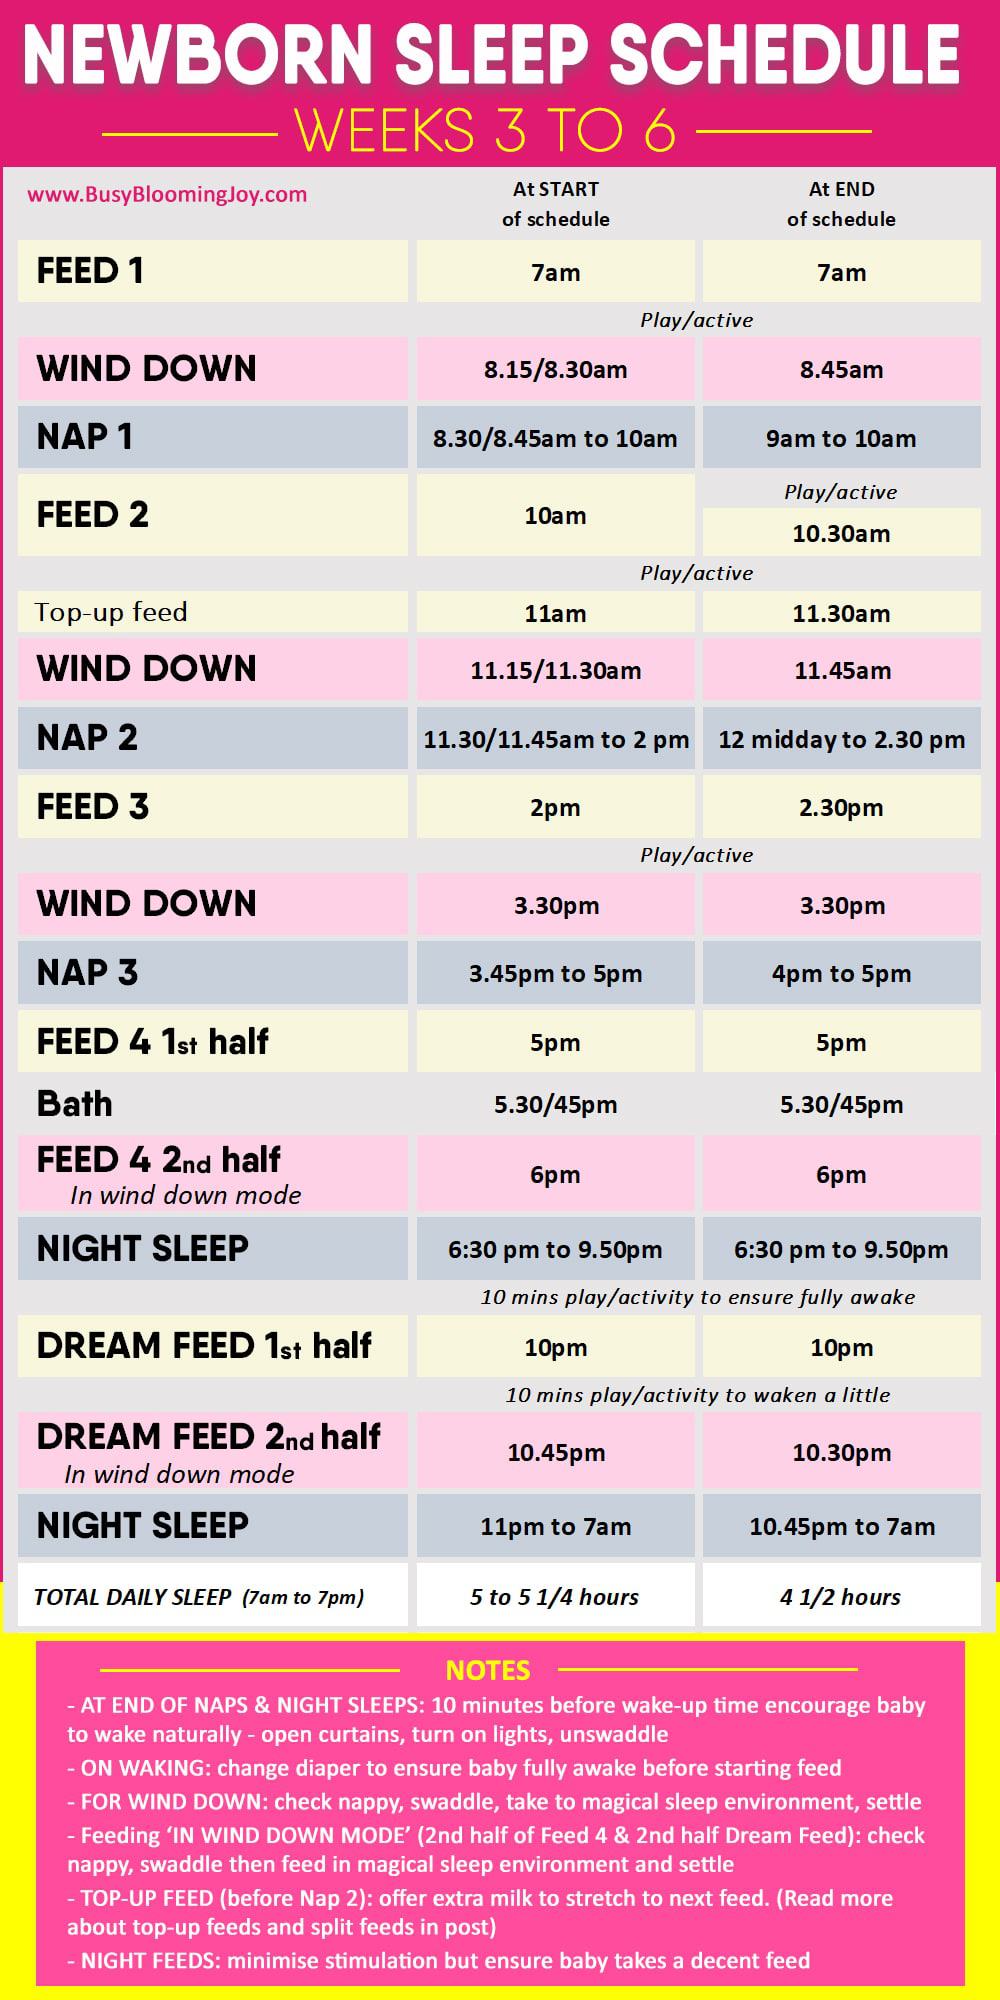 Newborn sleep schedule weeks 3 - 6